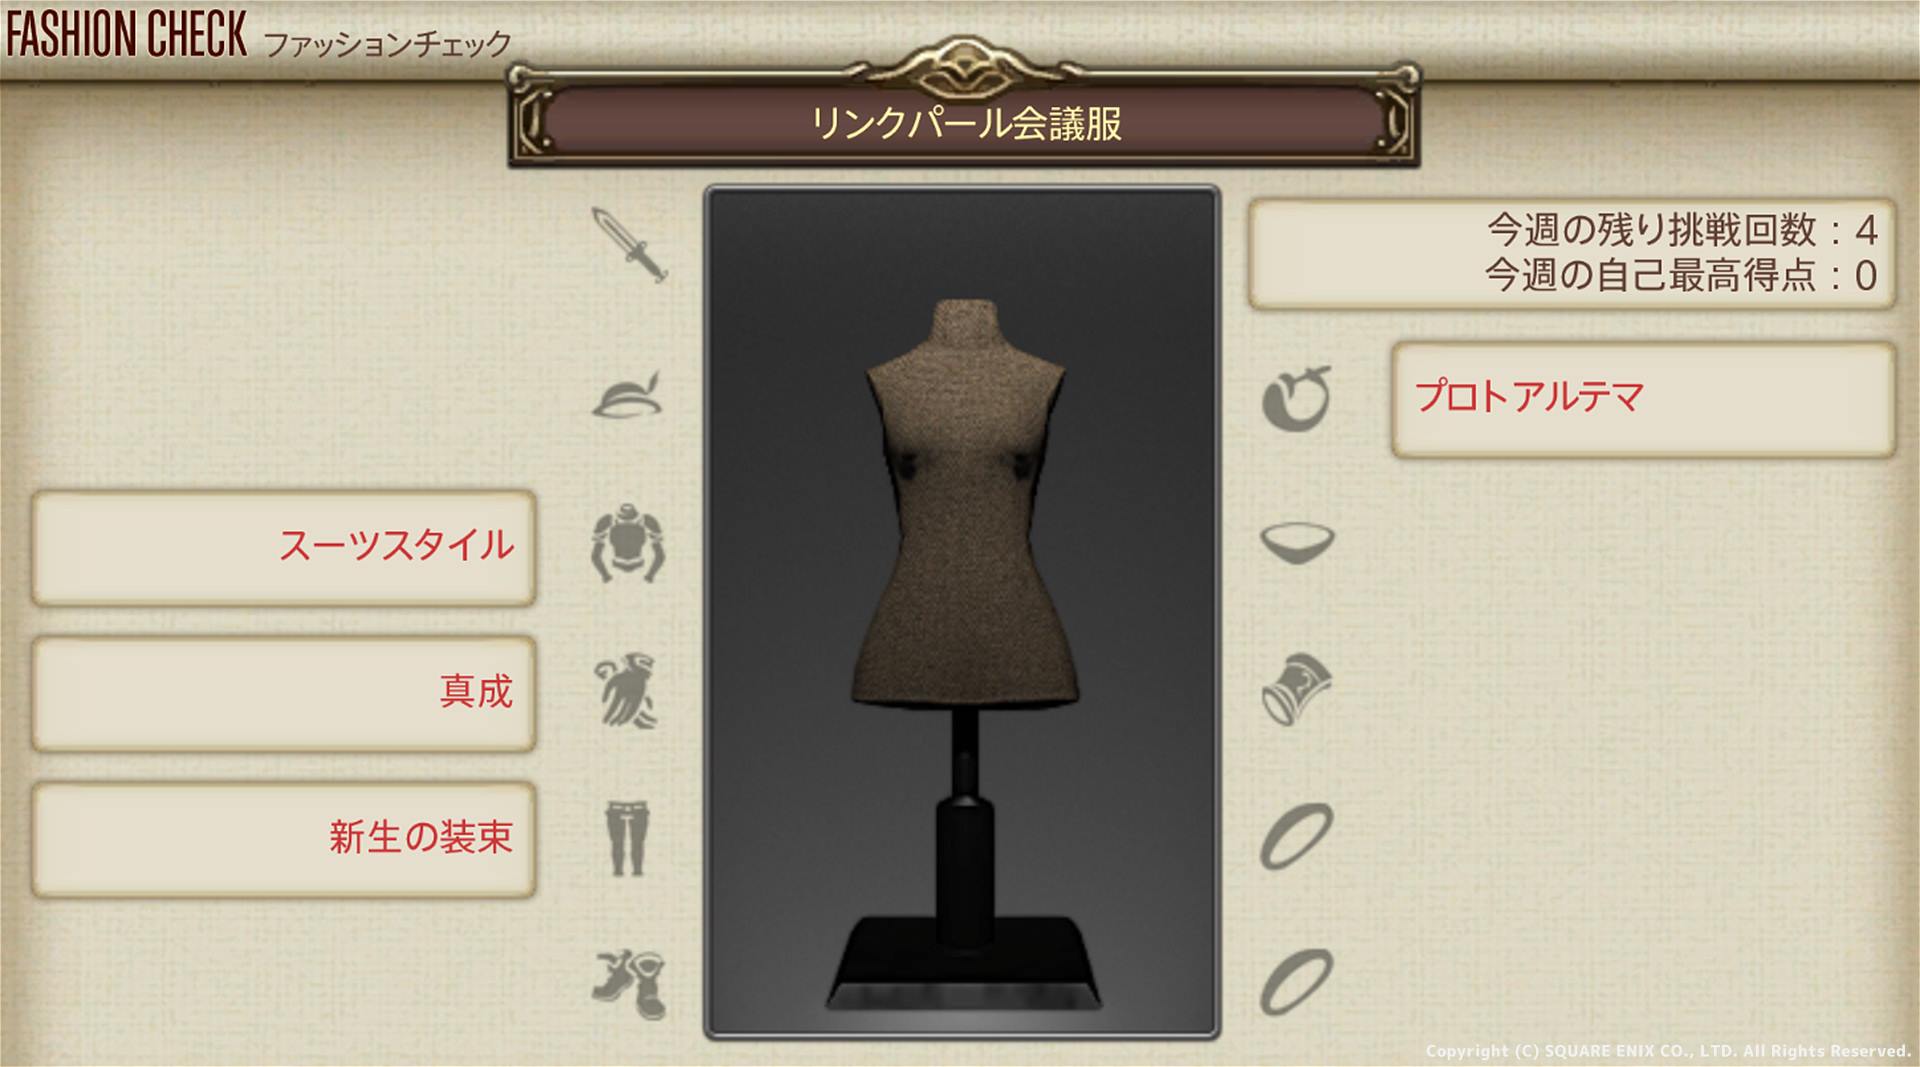 【FF14】ファッションチェック 9月21日発表のテーマは？「リンクパール会議服」